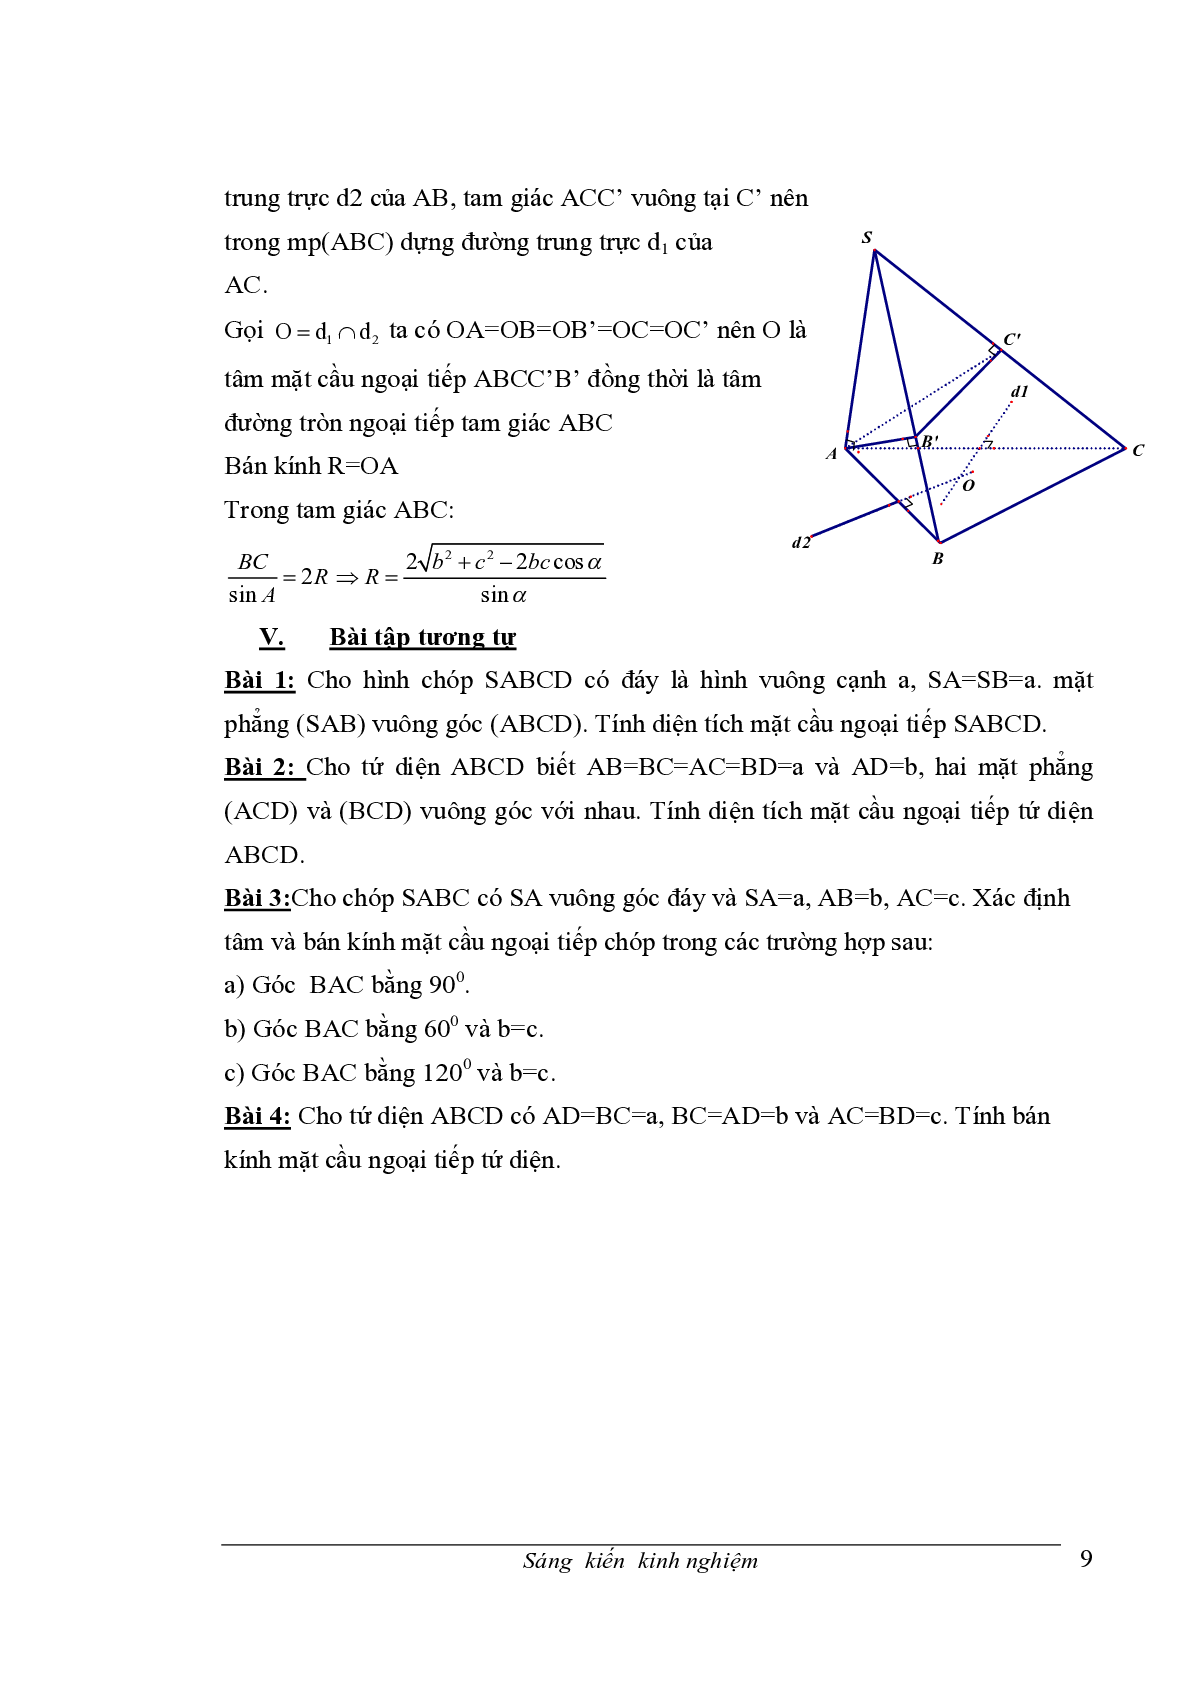 Chuyên đề Mặt cầu ngoại tiếp hình chóp (trang 9)